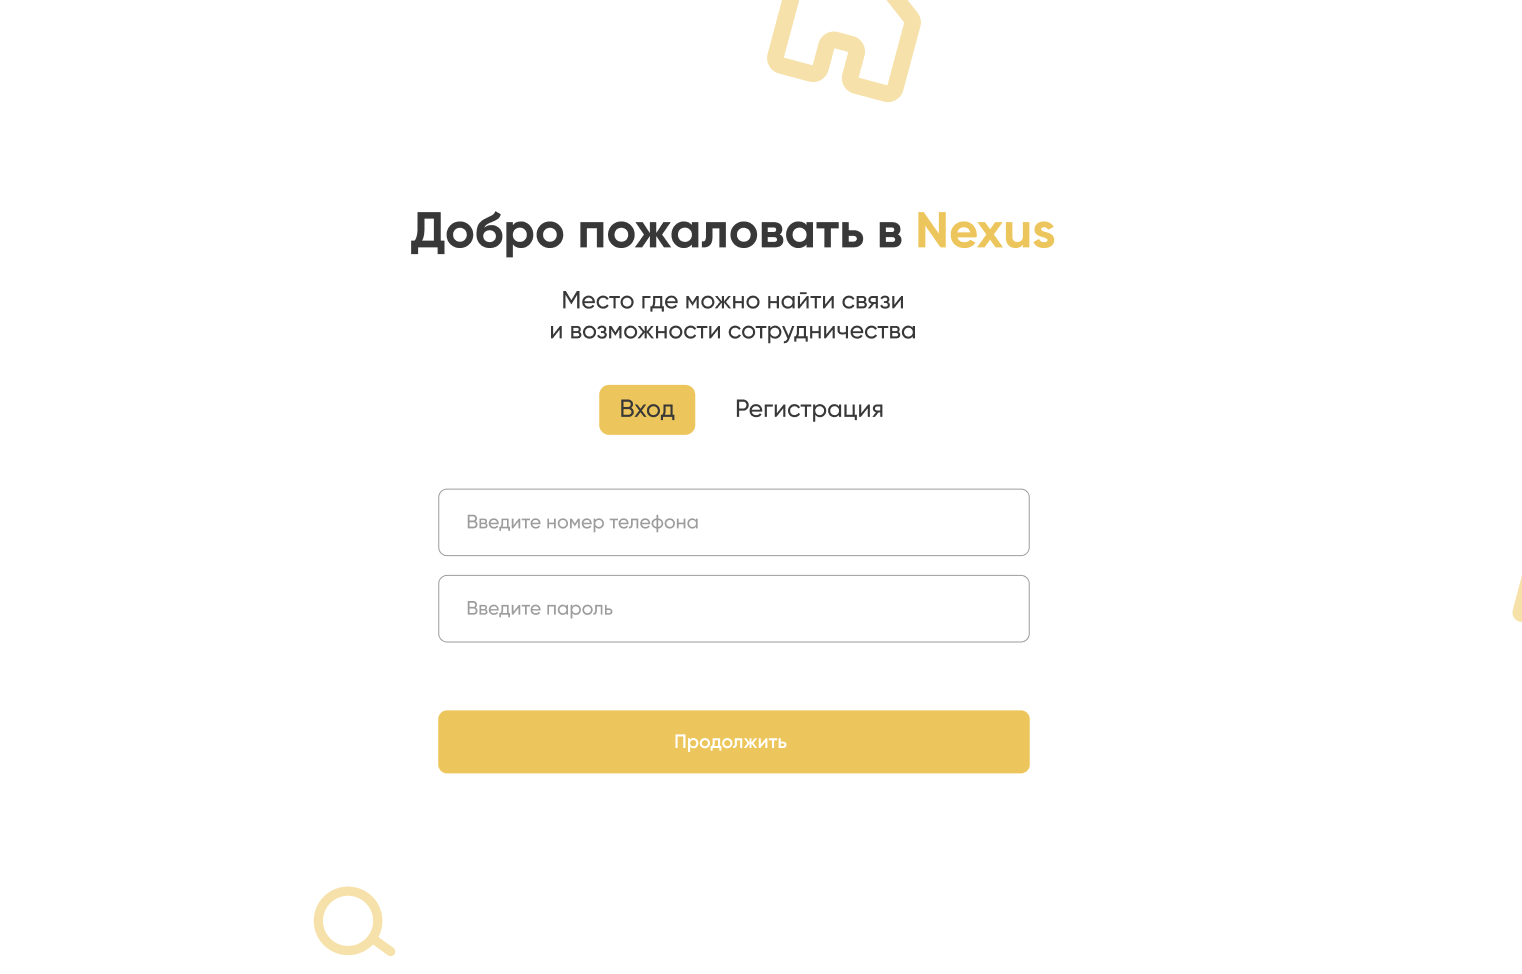 Нексус - сервис для мультиканального управления контентом и поиска нужных людей